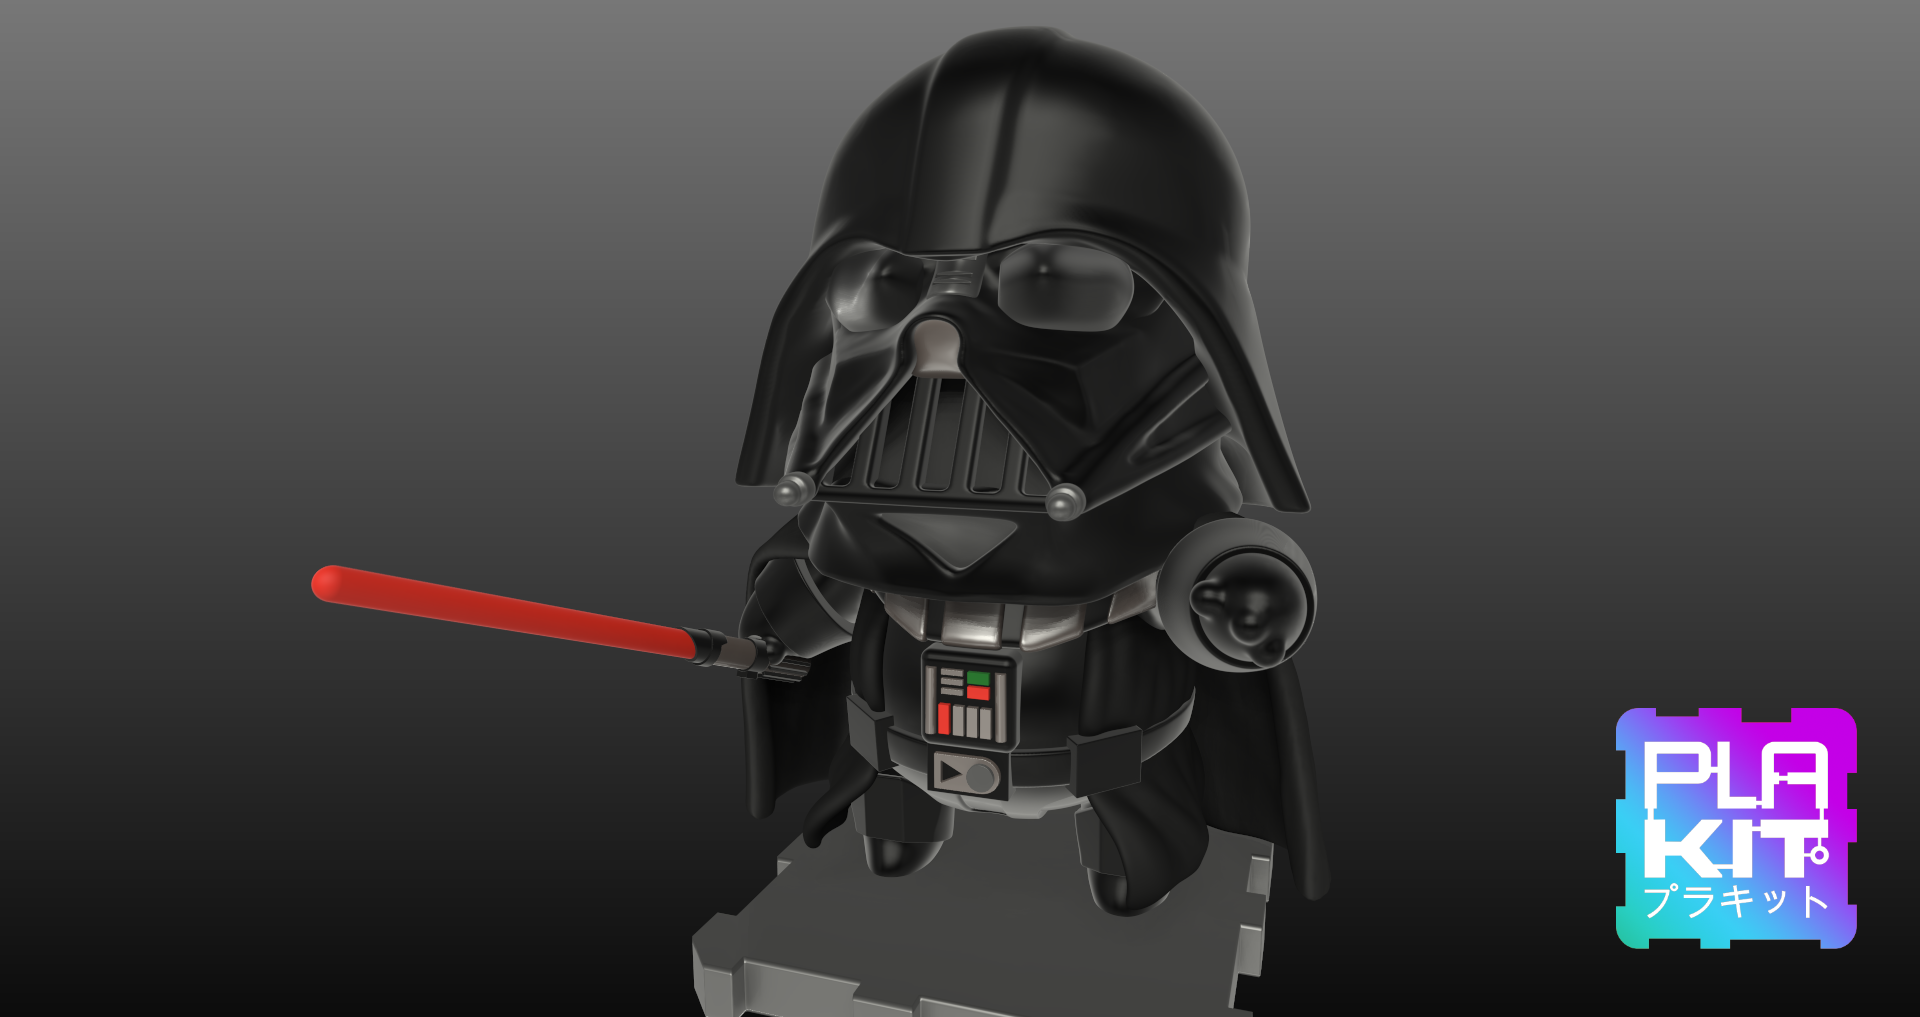 DARTHVADER2.png Download free STL file Star Wars DARTH VADER! • 3D printing model, purakito